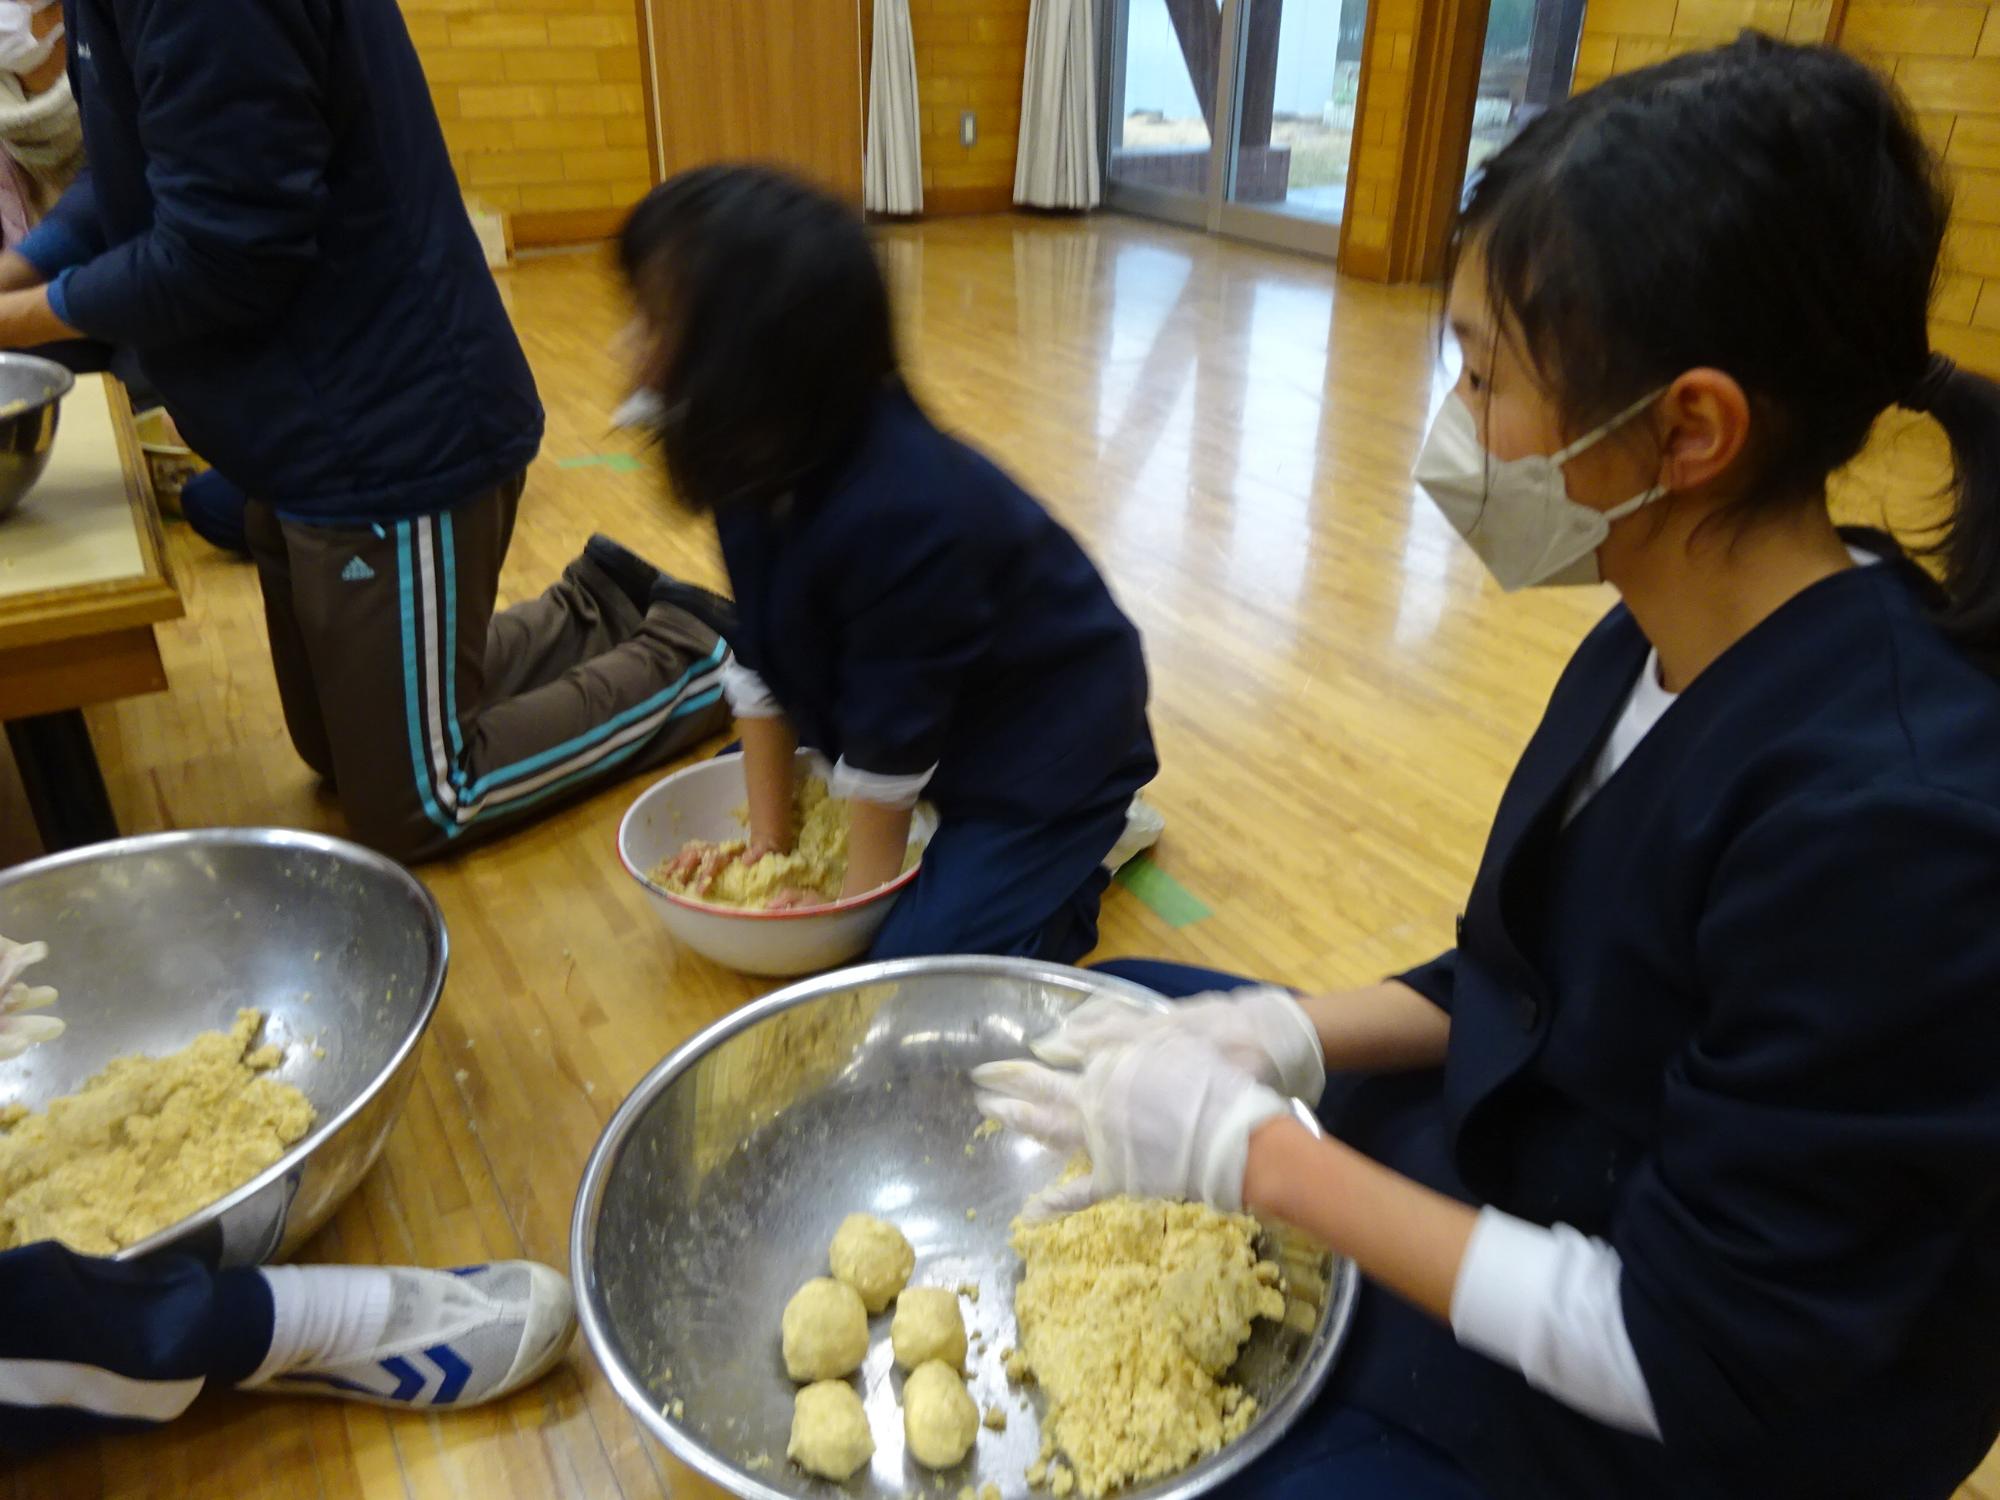 児童らが大豆と麹を混ぜ合わせたり、混ぜ合わせた後に空気抜きのため団子状に丸めたりしている写真